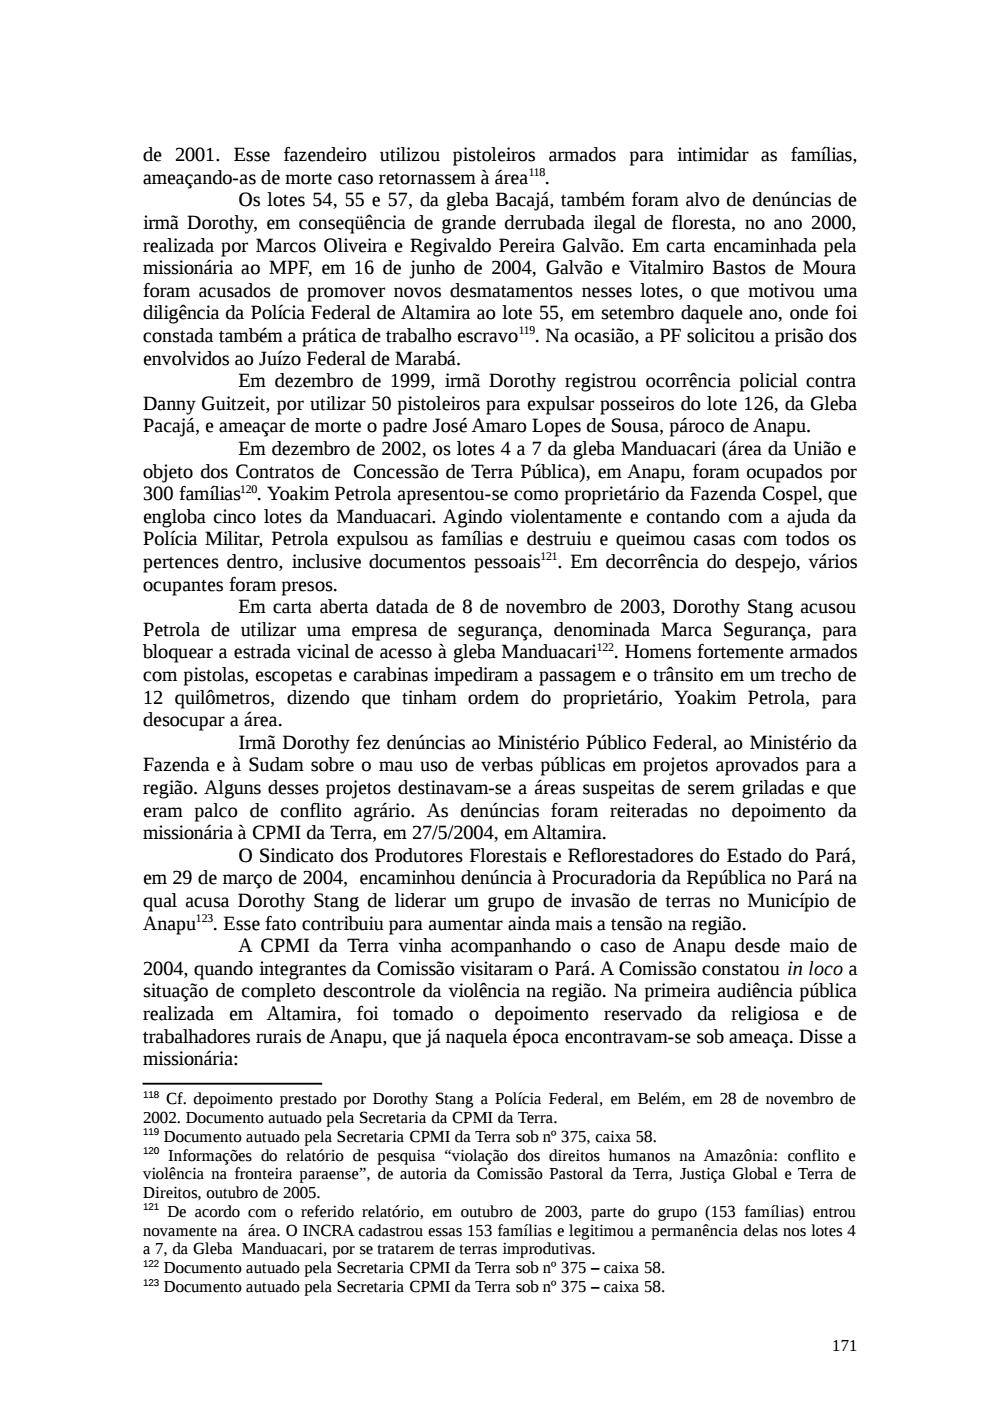 Page 171 from Relatório final da comissão